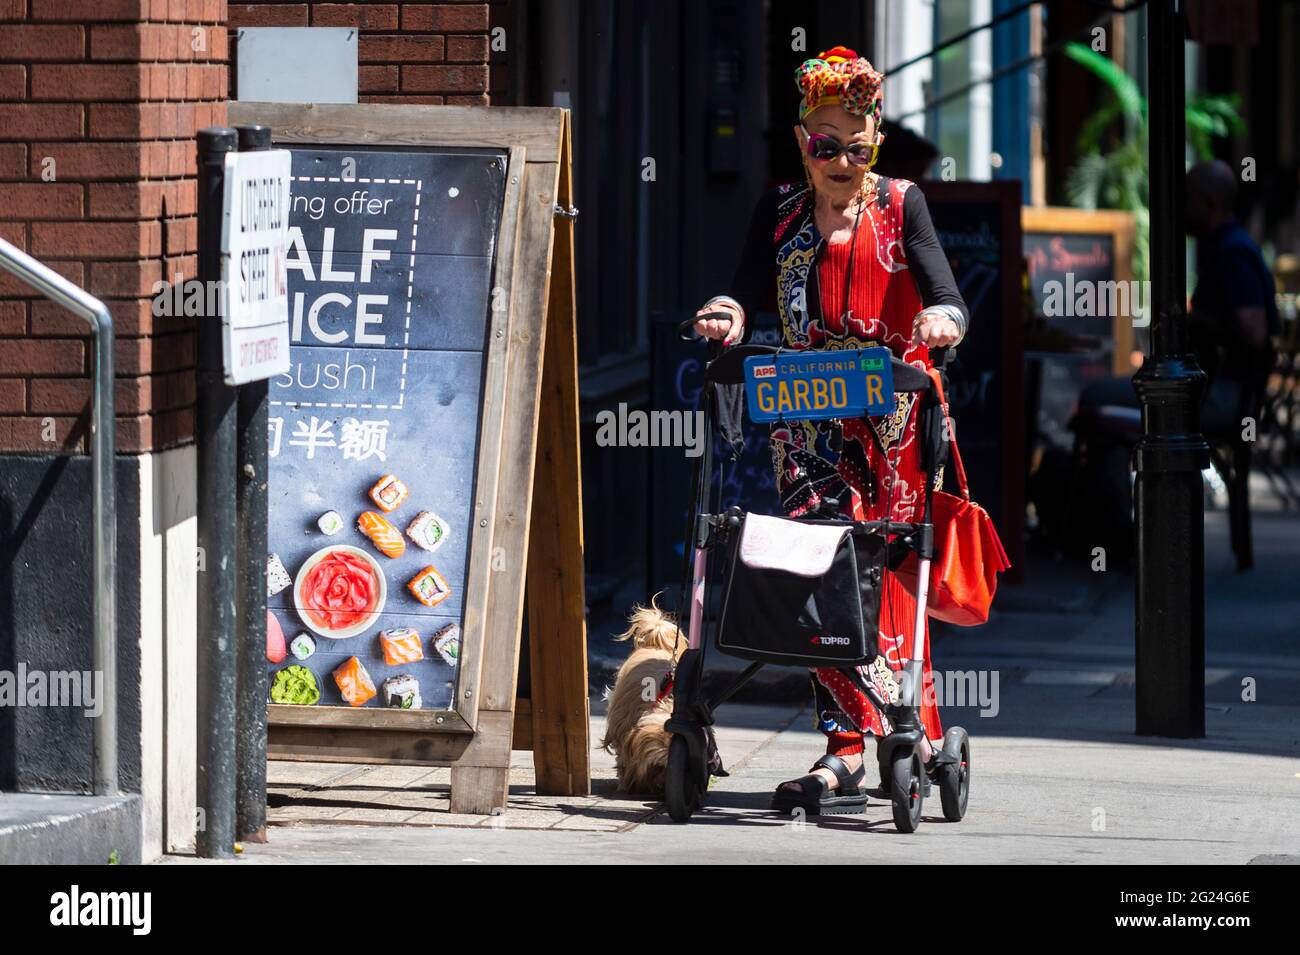 Londres, Royaume-Uni. 8 juin 2021. Météo au Royaume-Uni - une femme élégamment habillée marche son chien près de Cambridge Circus lors d'un après-midi chaud et ensoleillé, lorsque les températures ont augmenté à 25 °C dans la capitale. Credit: Stephen Chung / Alamy Live News Banque D'Images